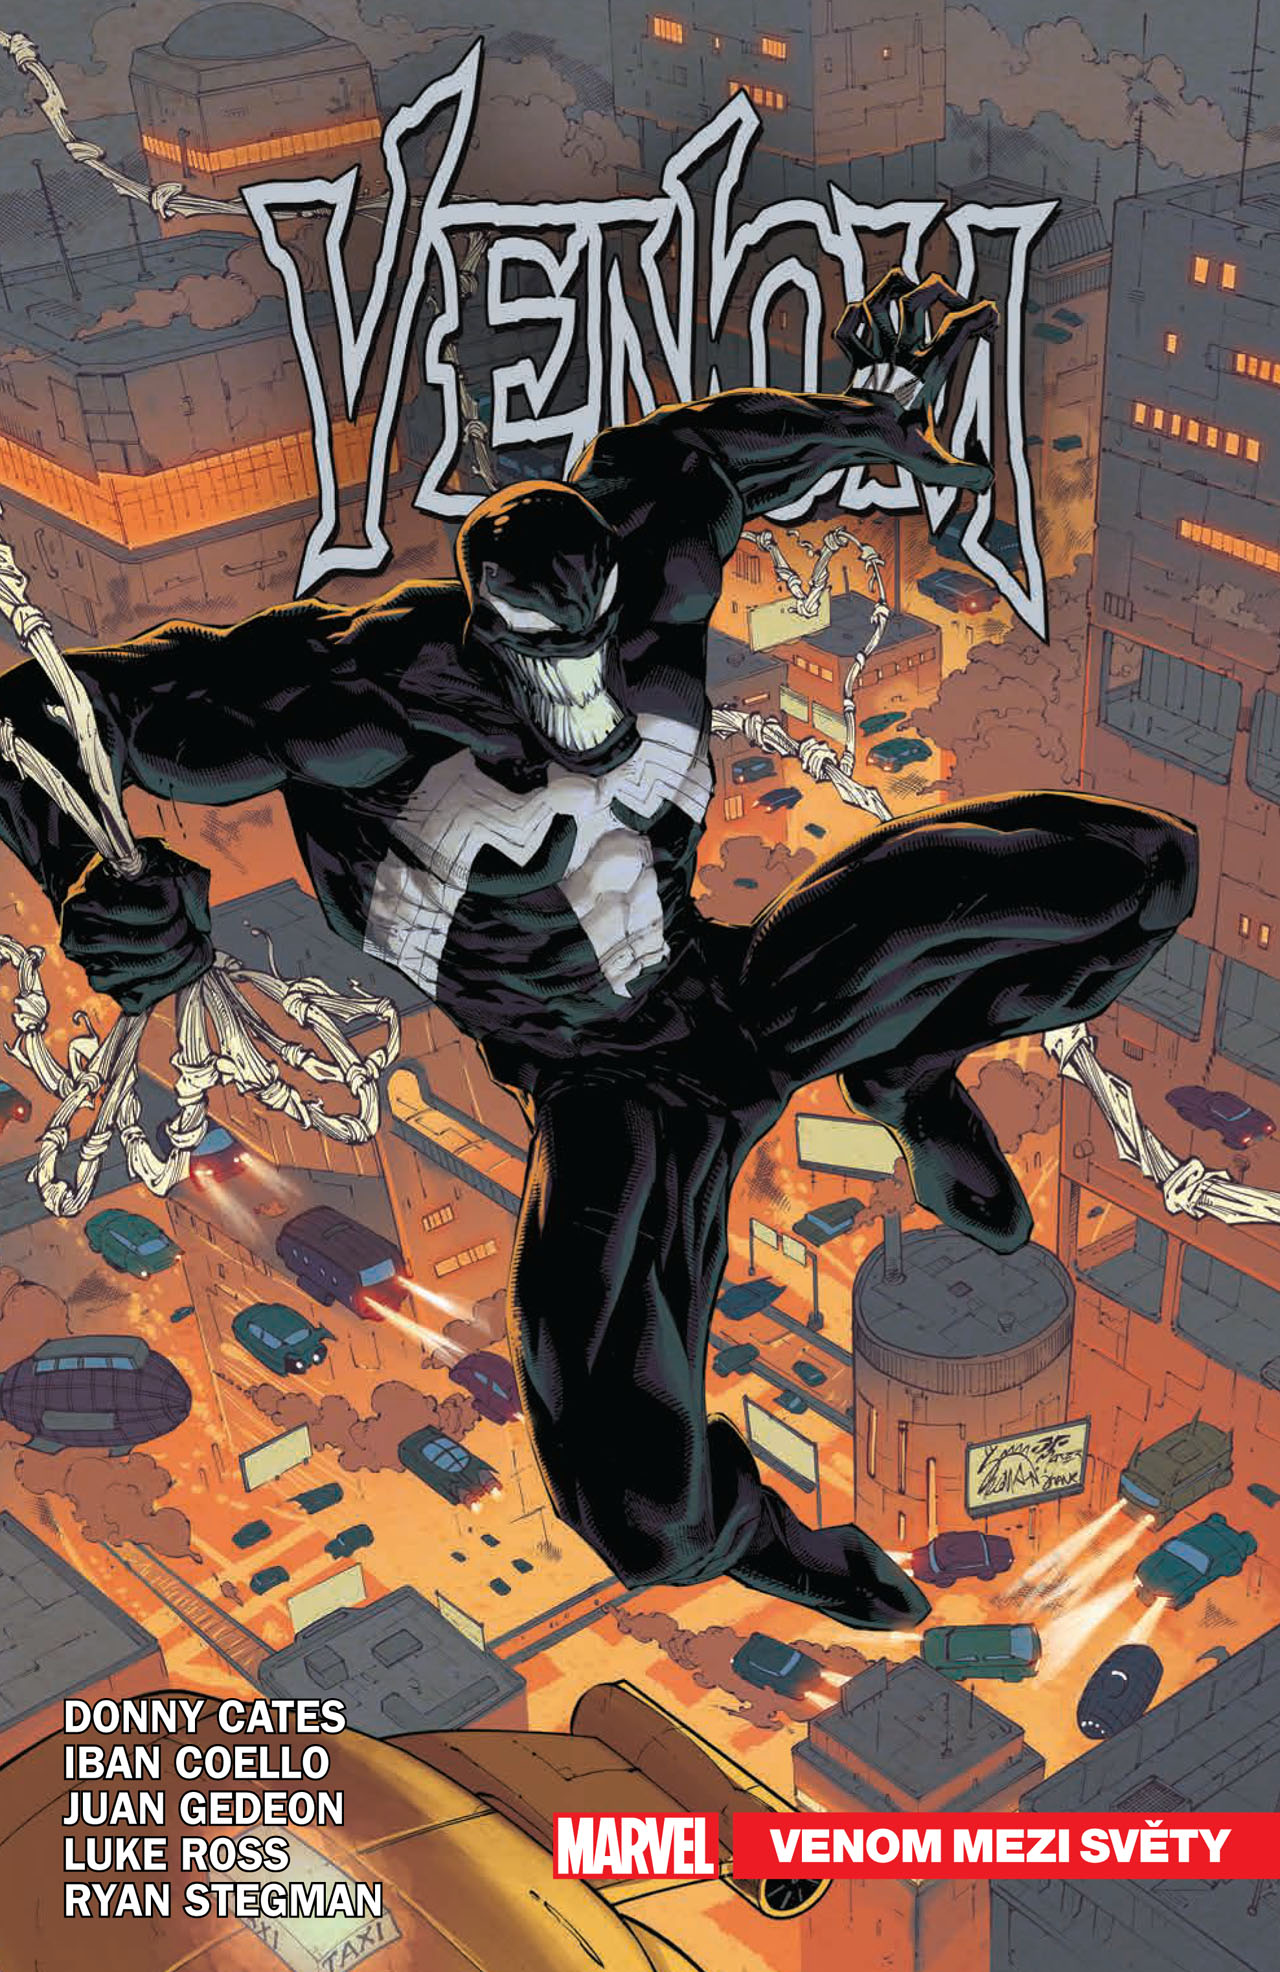 obrázek k novince - Venom 6: Venom mezi světy